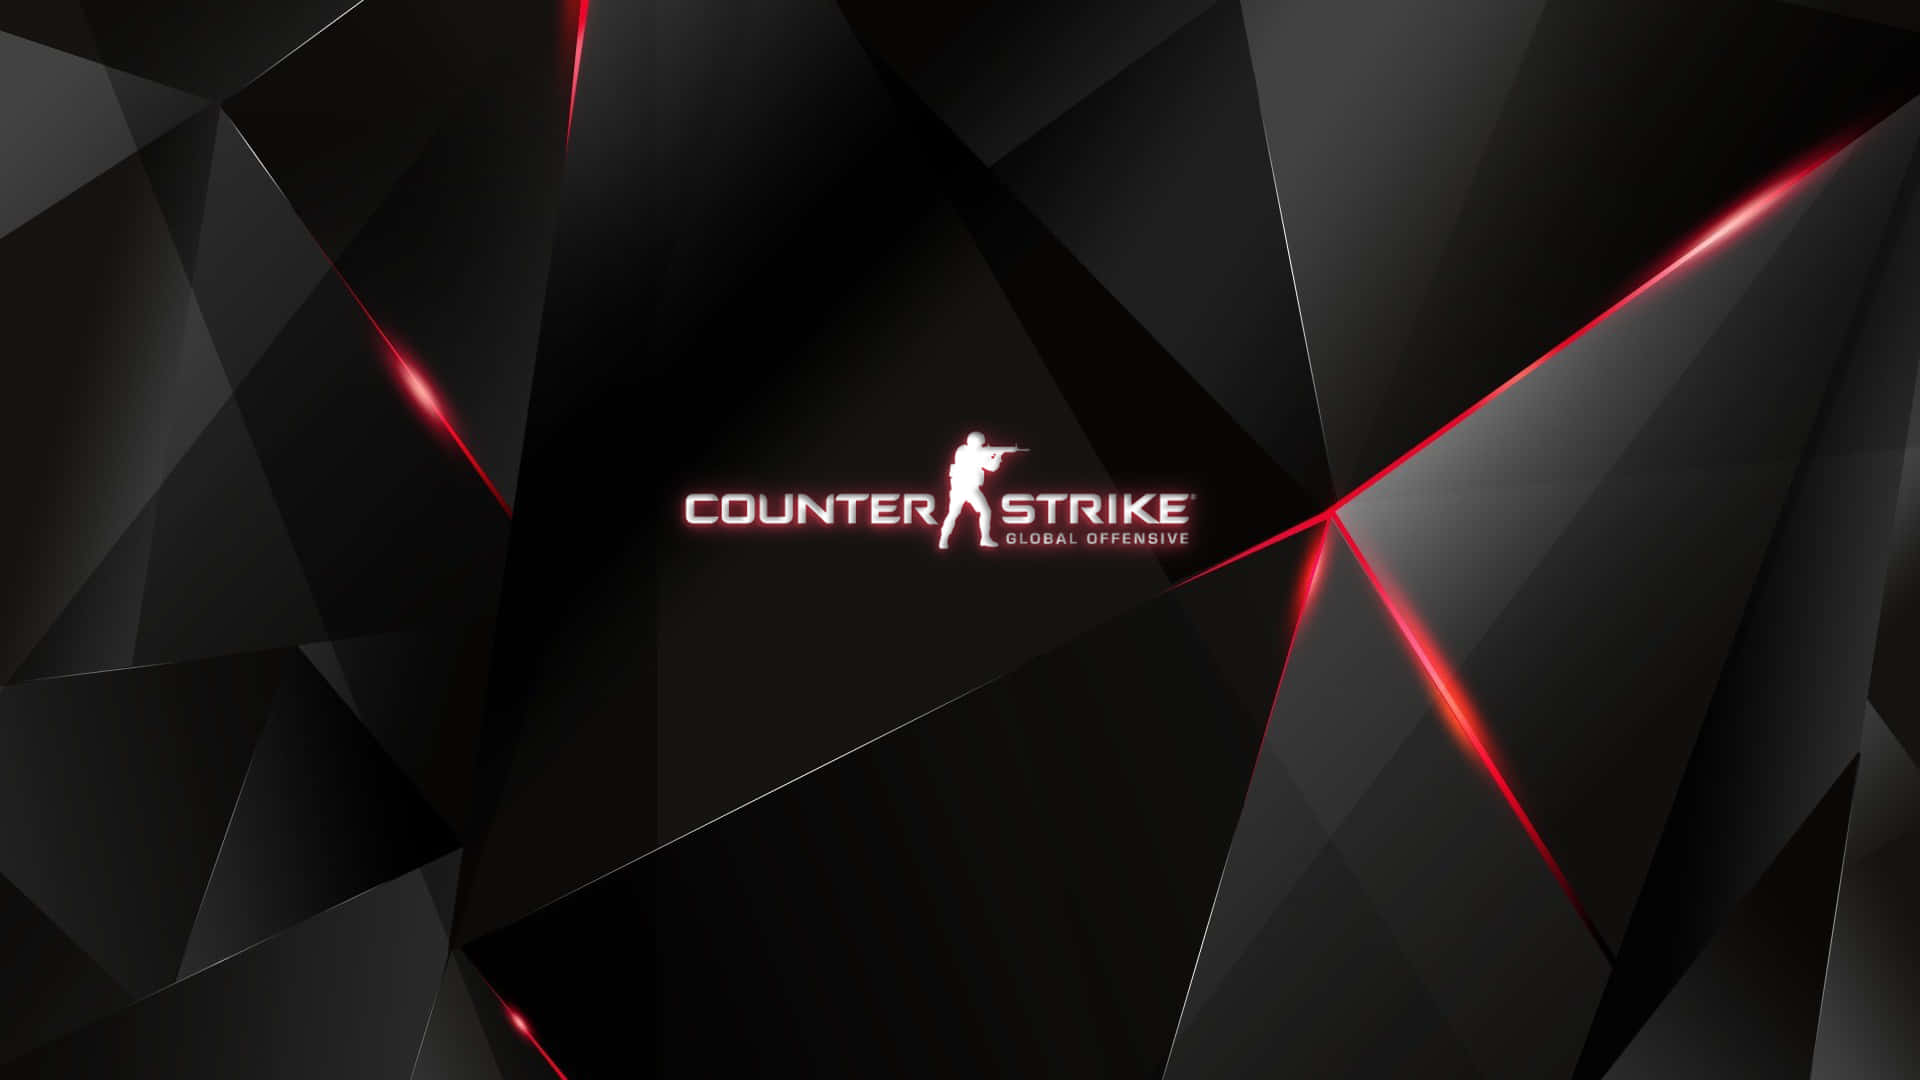 Fundopreto E Vermelho Geométrico Do Counter Strike Global Offensive Em 1080p.